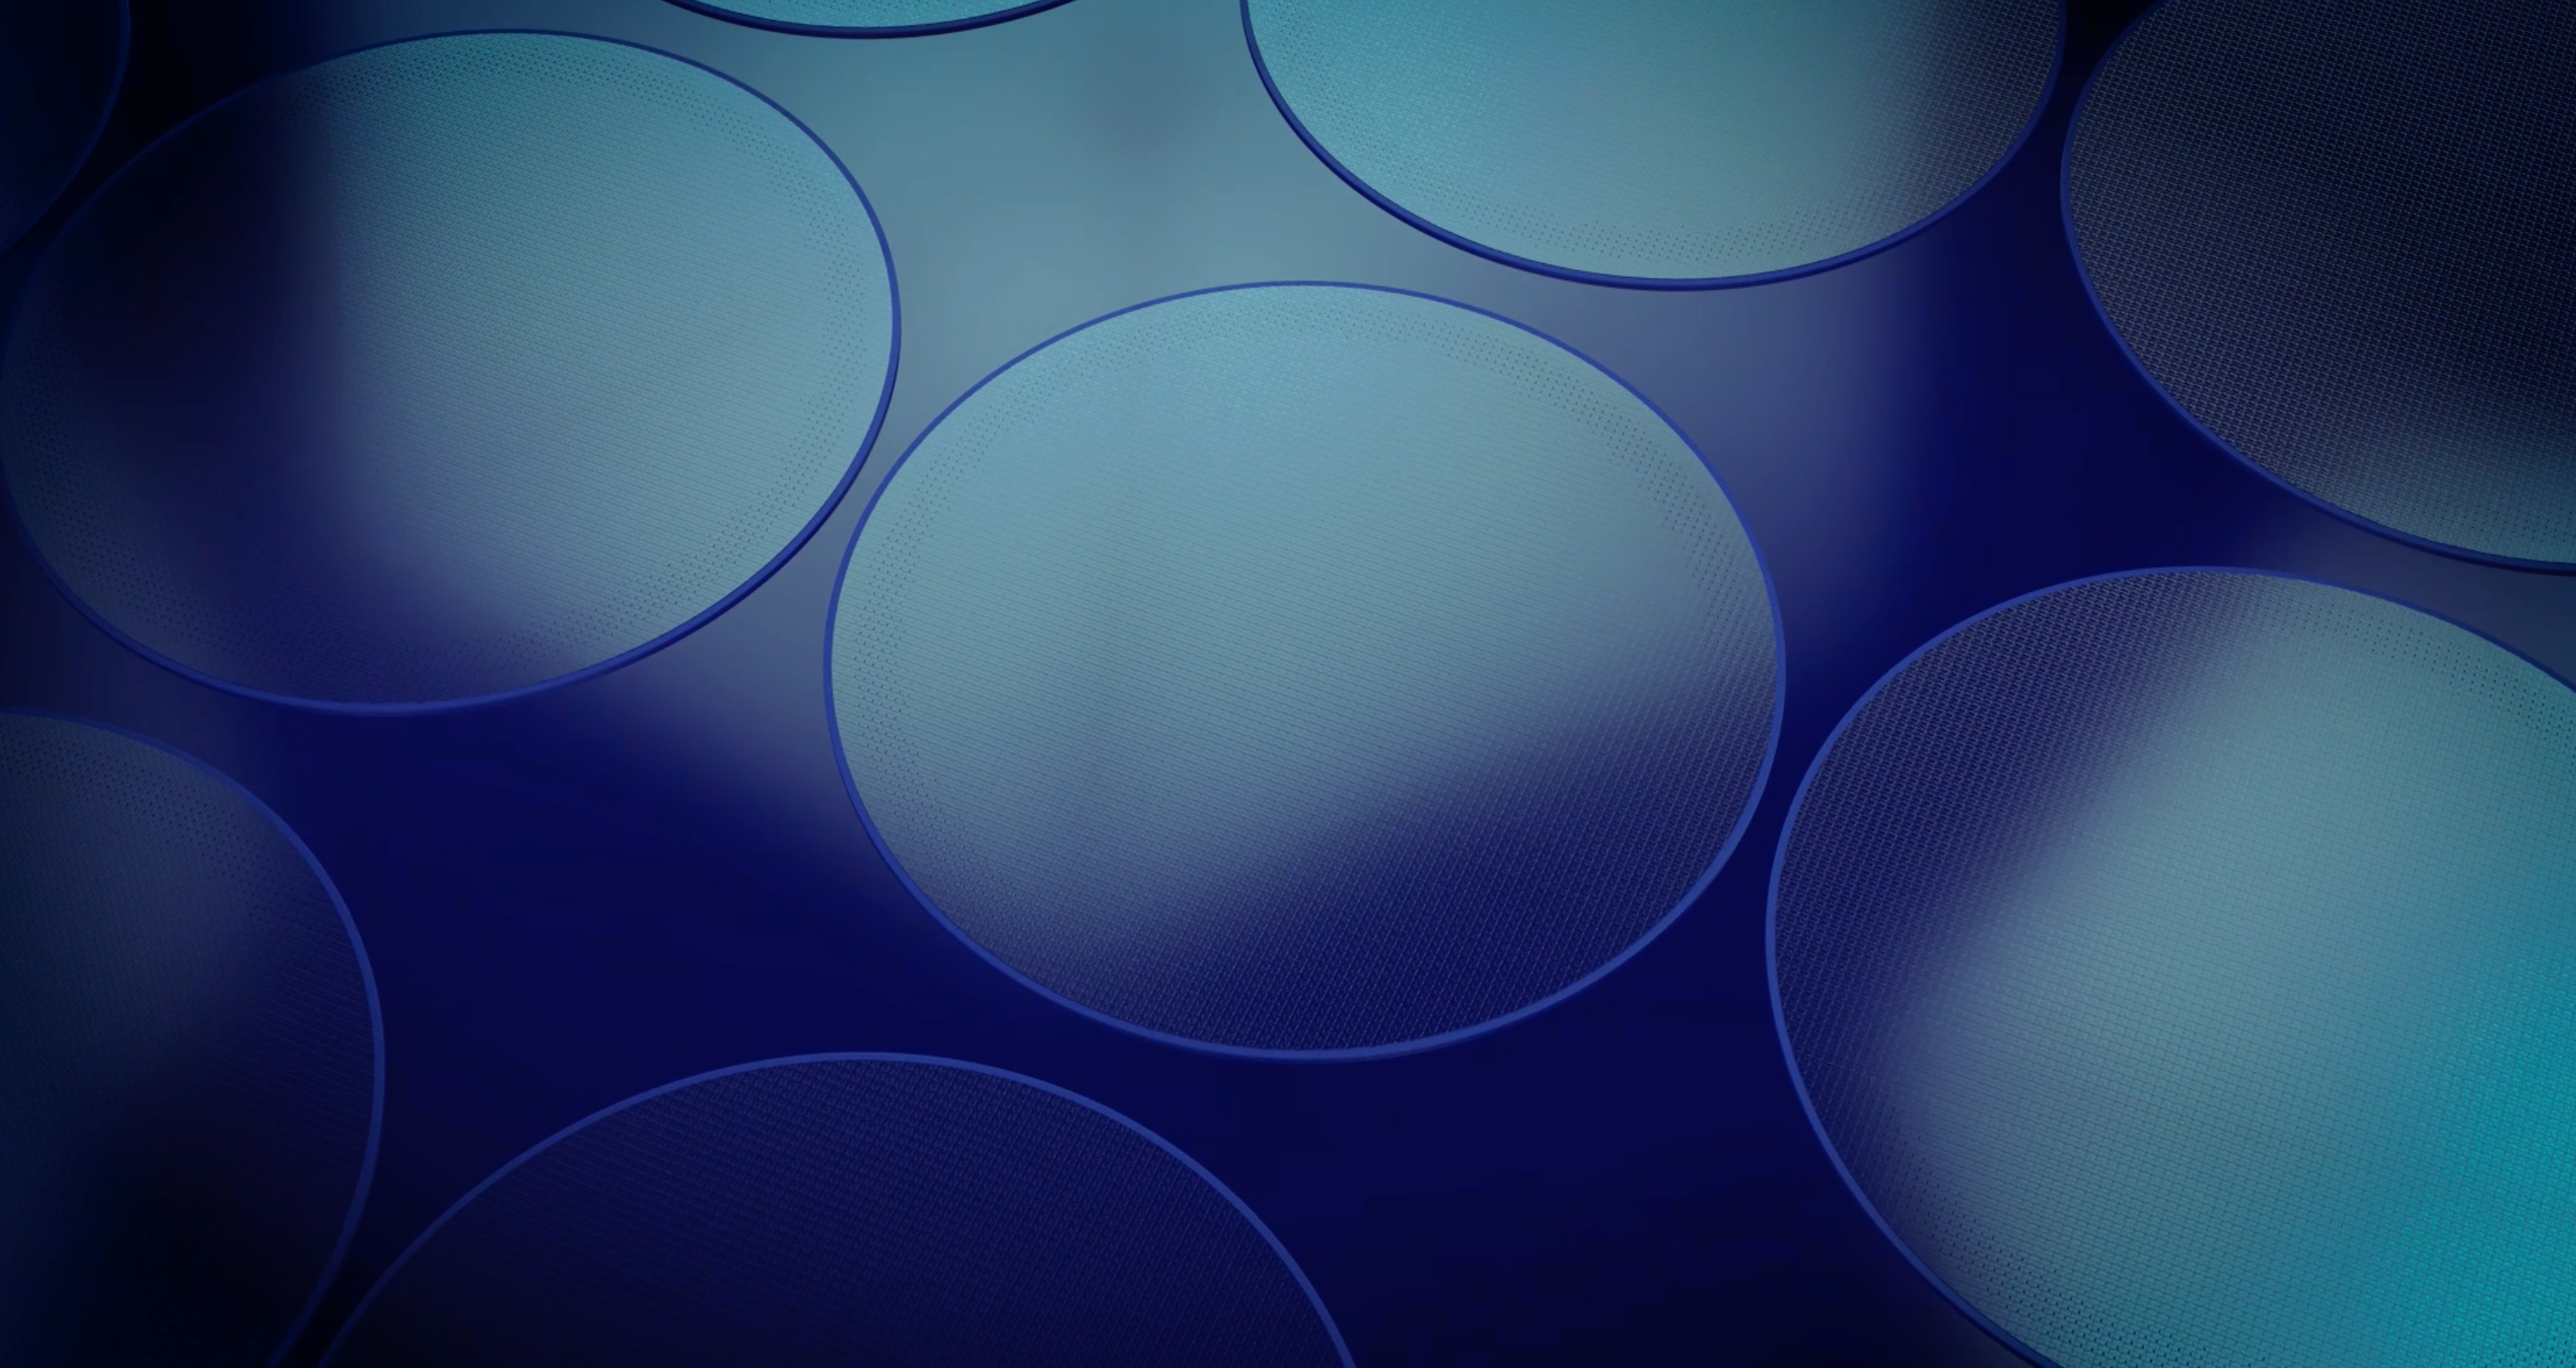 Immagine astratta ravvicinata di cerchi azzurri illuminati su sfondo blu scuro